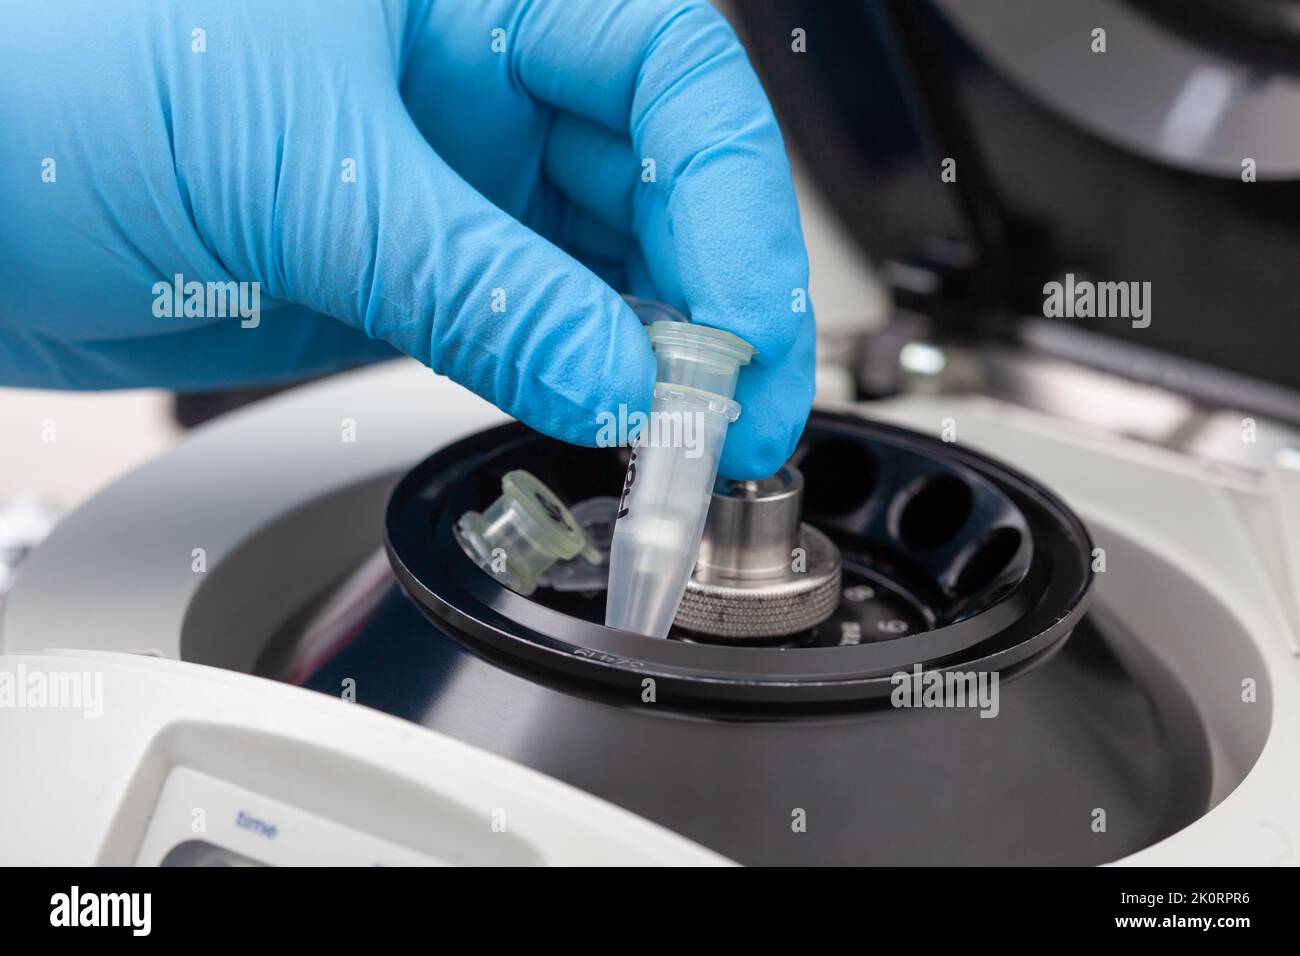 Gros plan d'une main scientifique plaçant un tube dans une petite centrifugeuse de table. Technique de purification des acides nucléiques à base de colonnes de centrifugation. Diagnostic de p. Humaine Banque D'Images